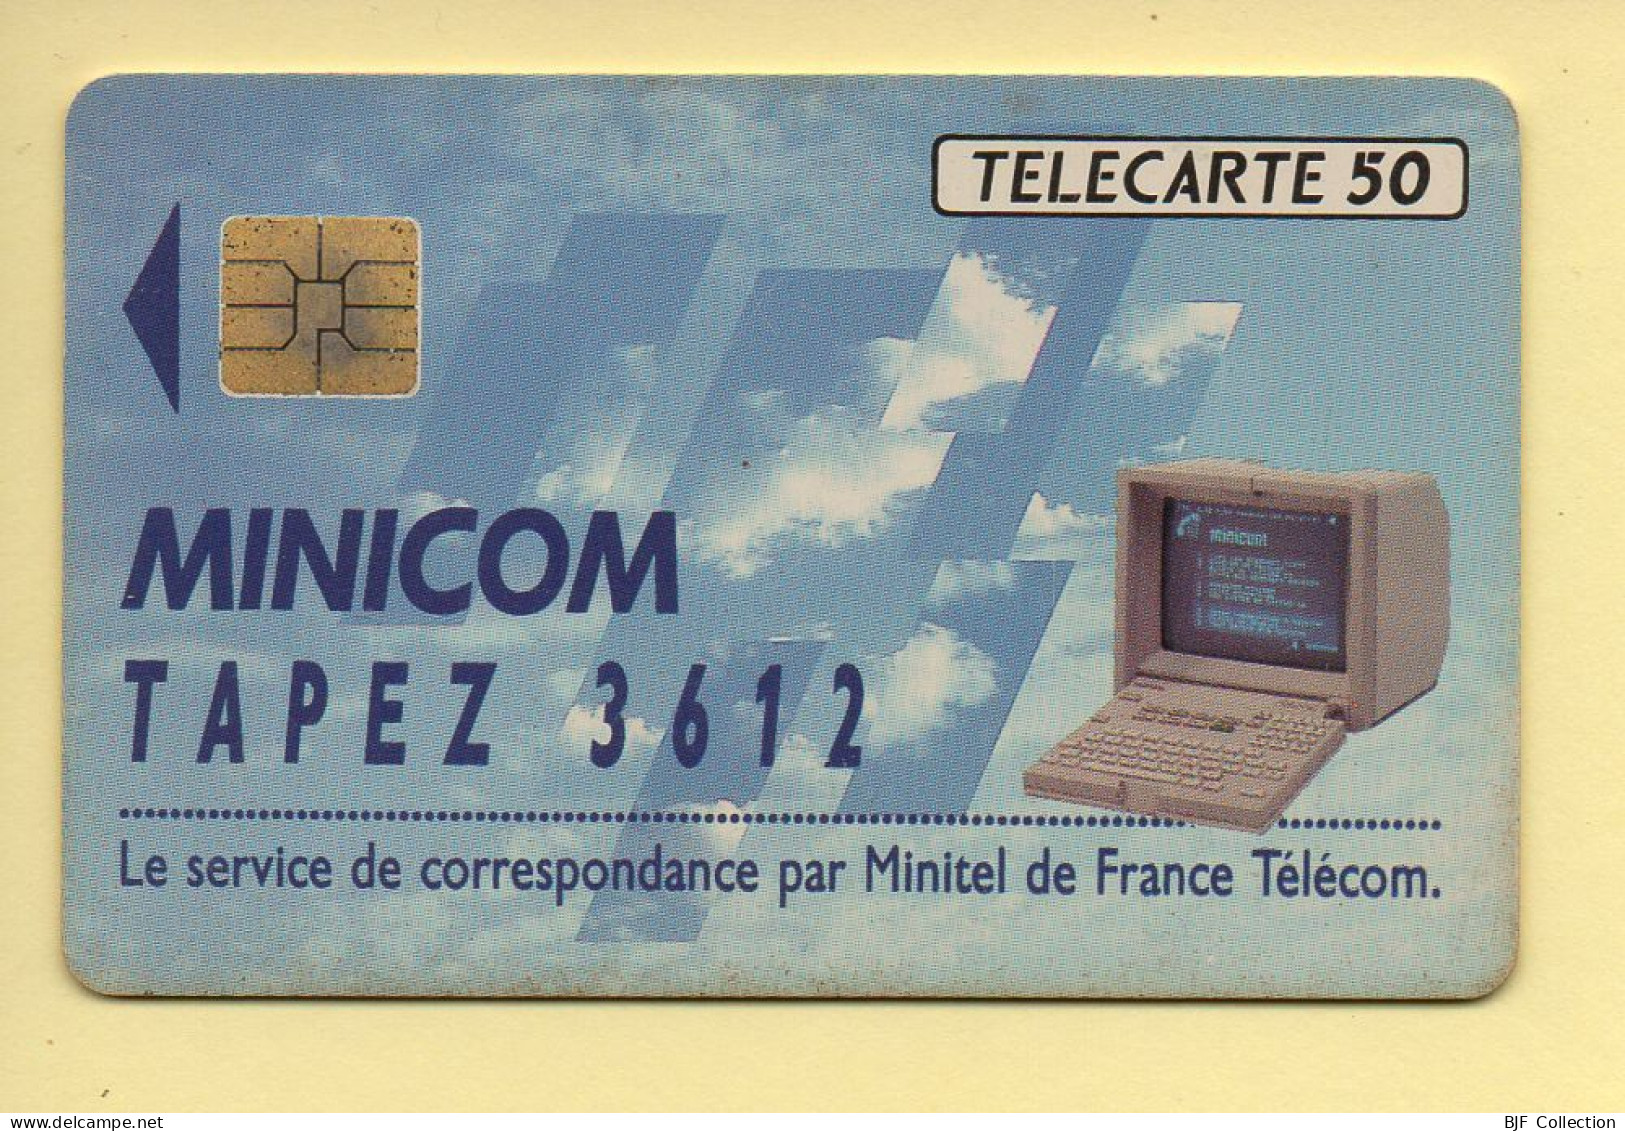 Télécarte 1992 : MINICOM 3612 / 50 Unités / Numéro A 296722 / 09-92 (voir Puce Et Numéro Au Dos) - 1992